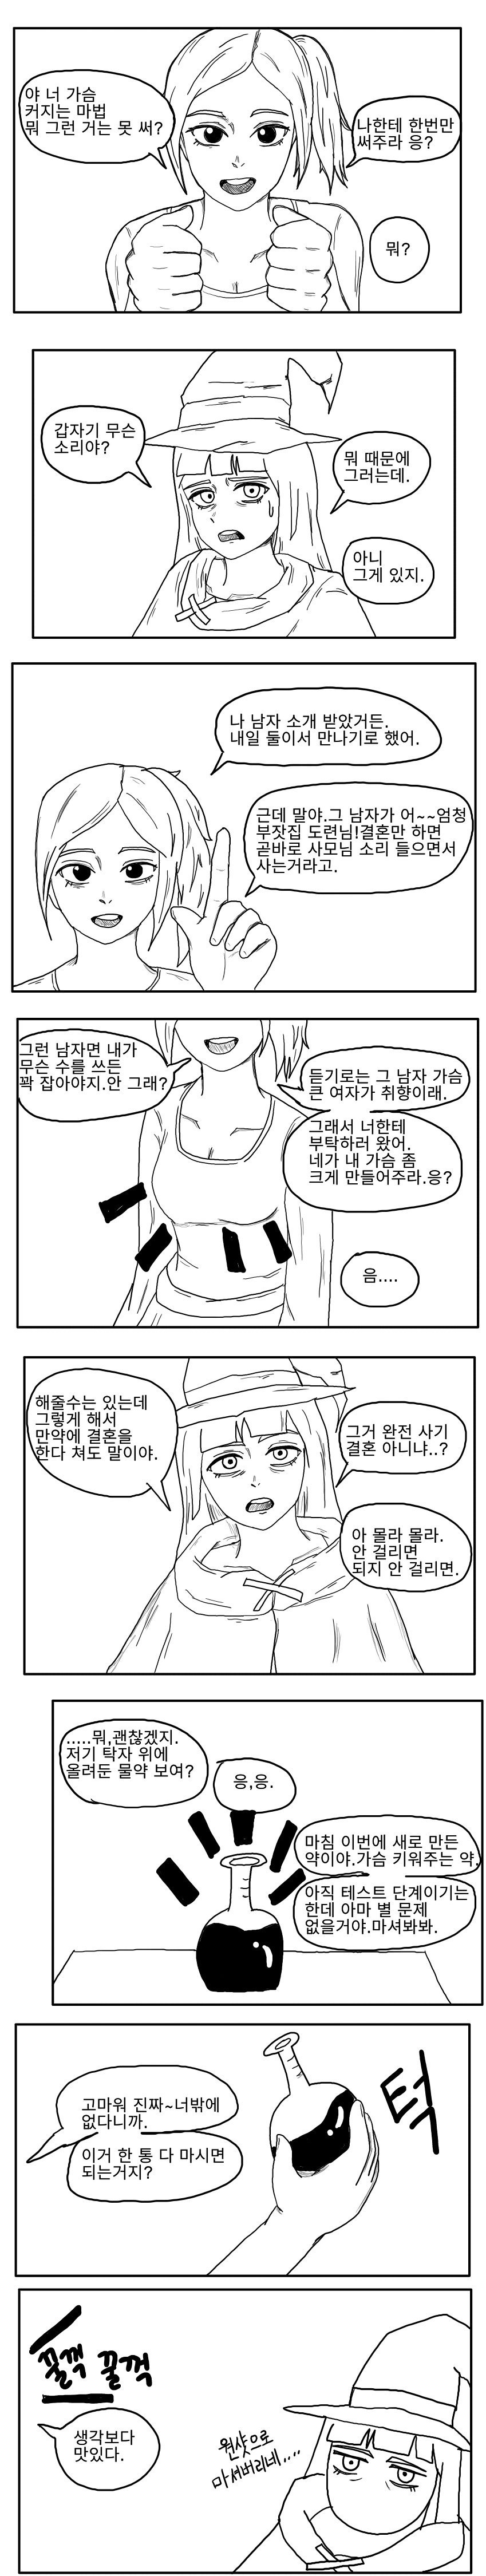 ㅇㅎ)마녀가 친구 가슴 키워주는 만화.manhwa